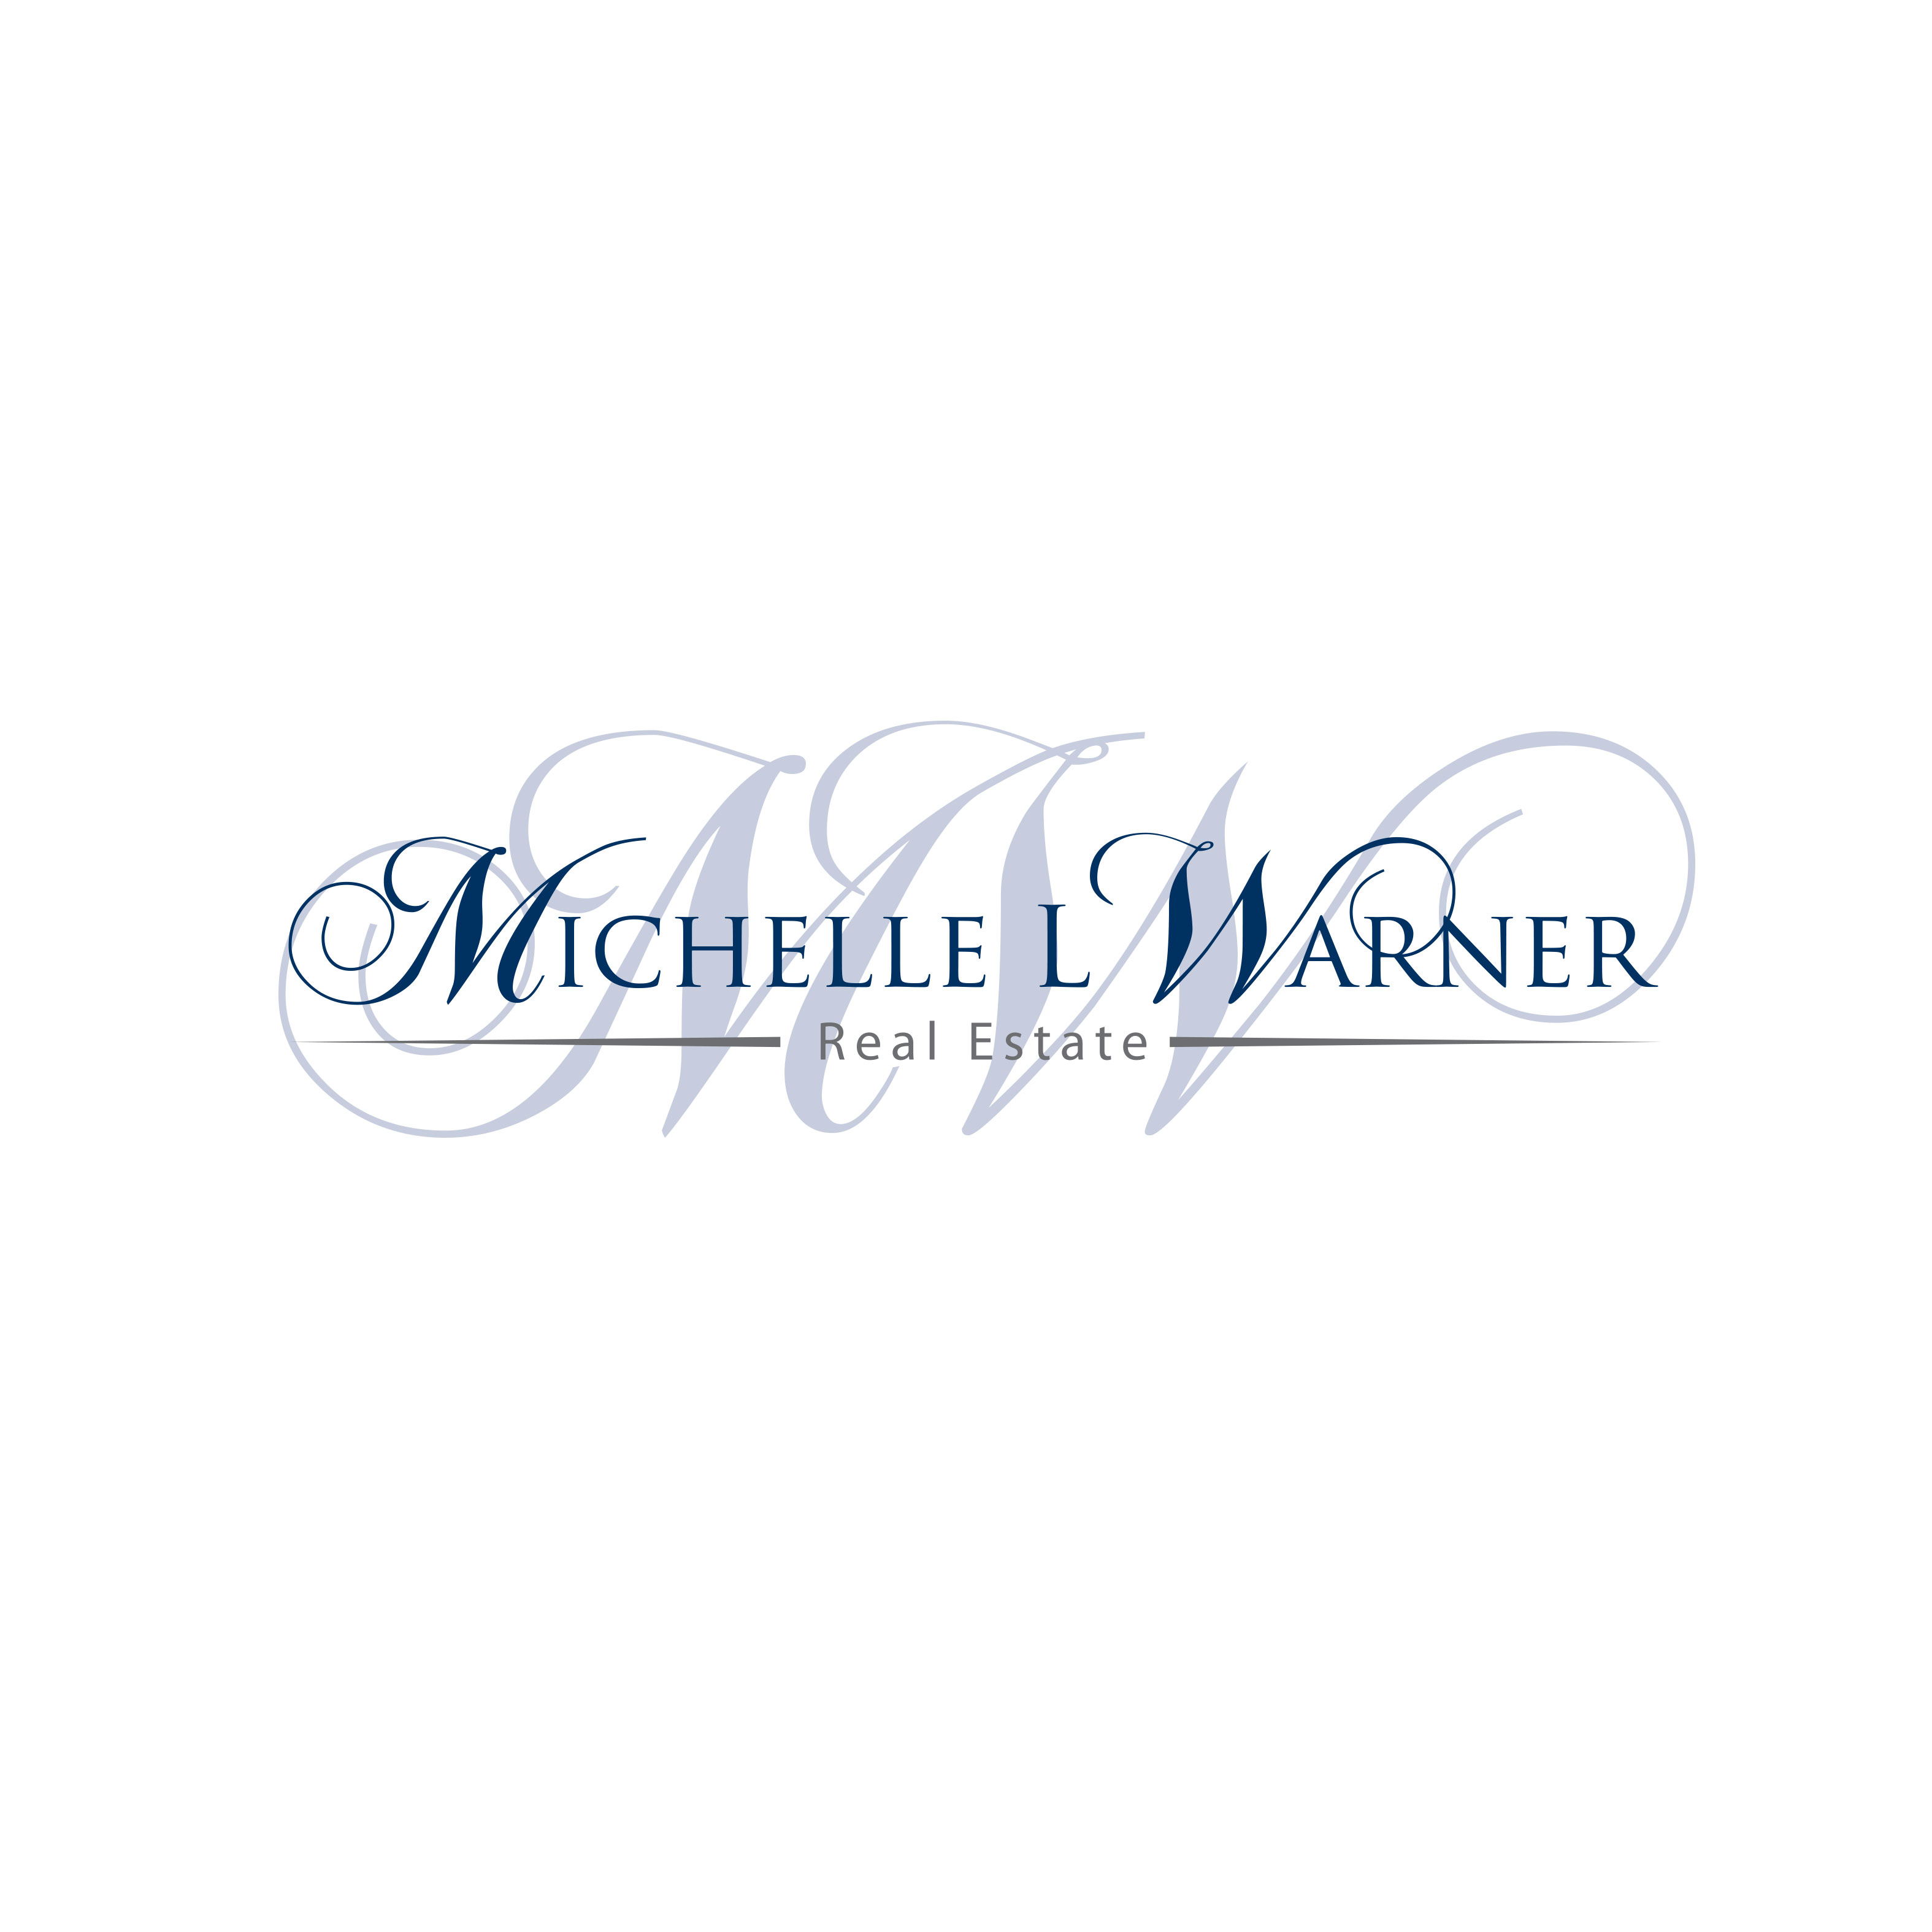 Logo design for Michelle L Warner Real Estate